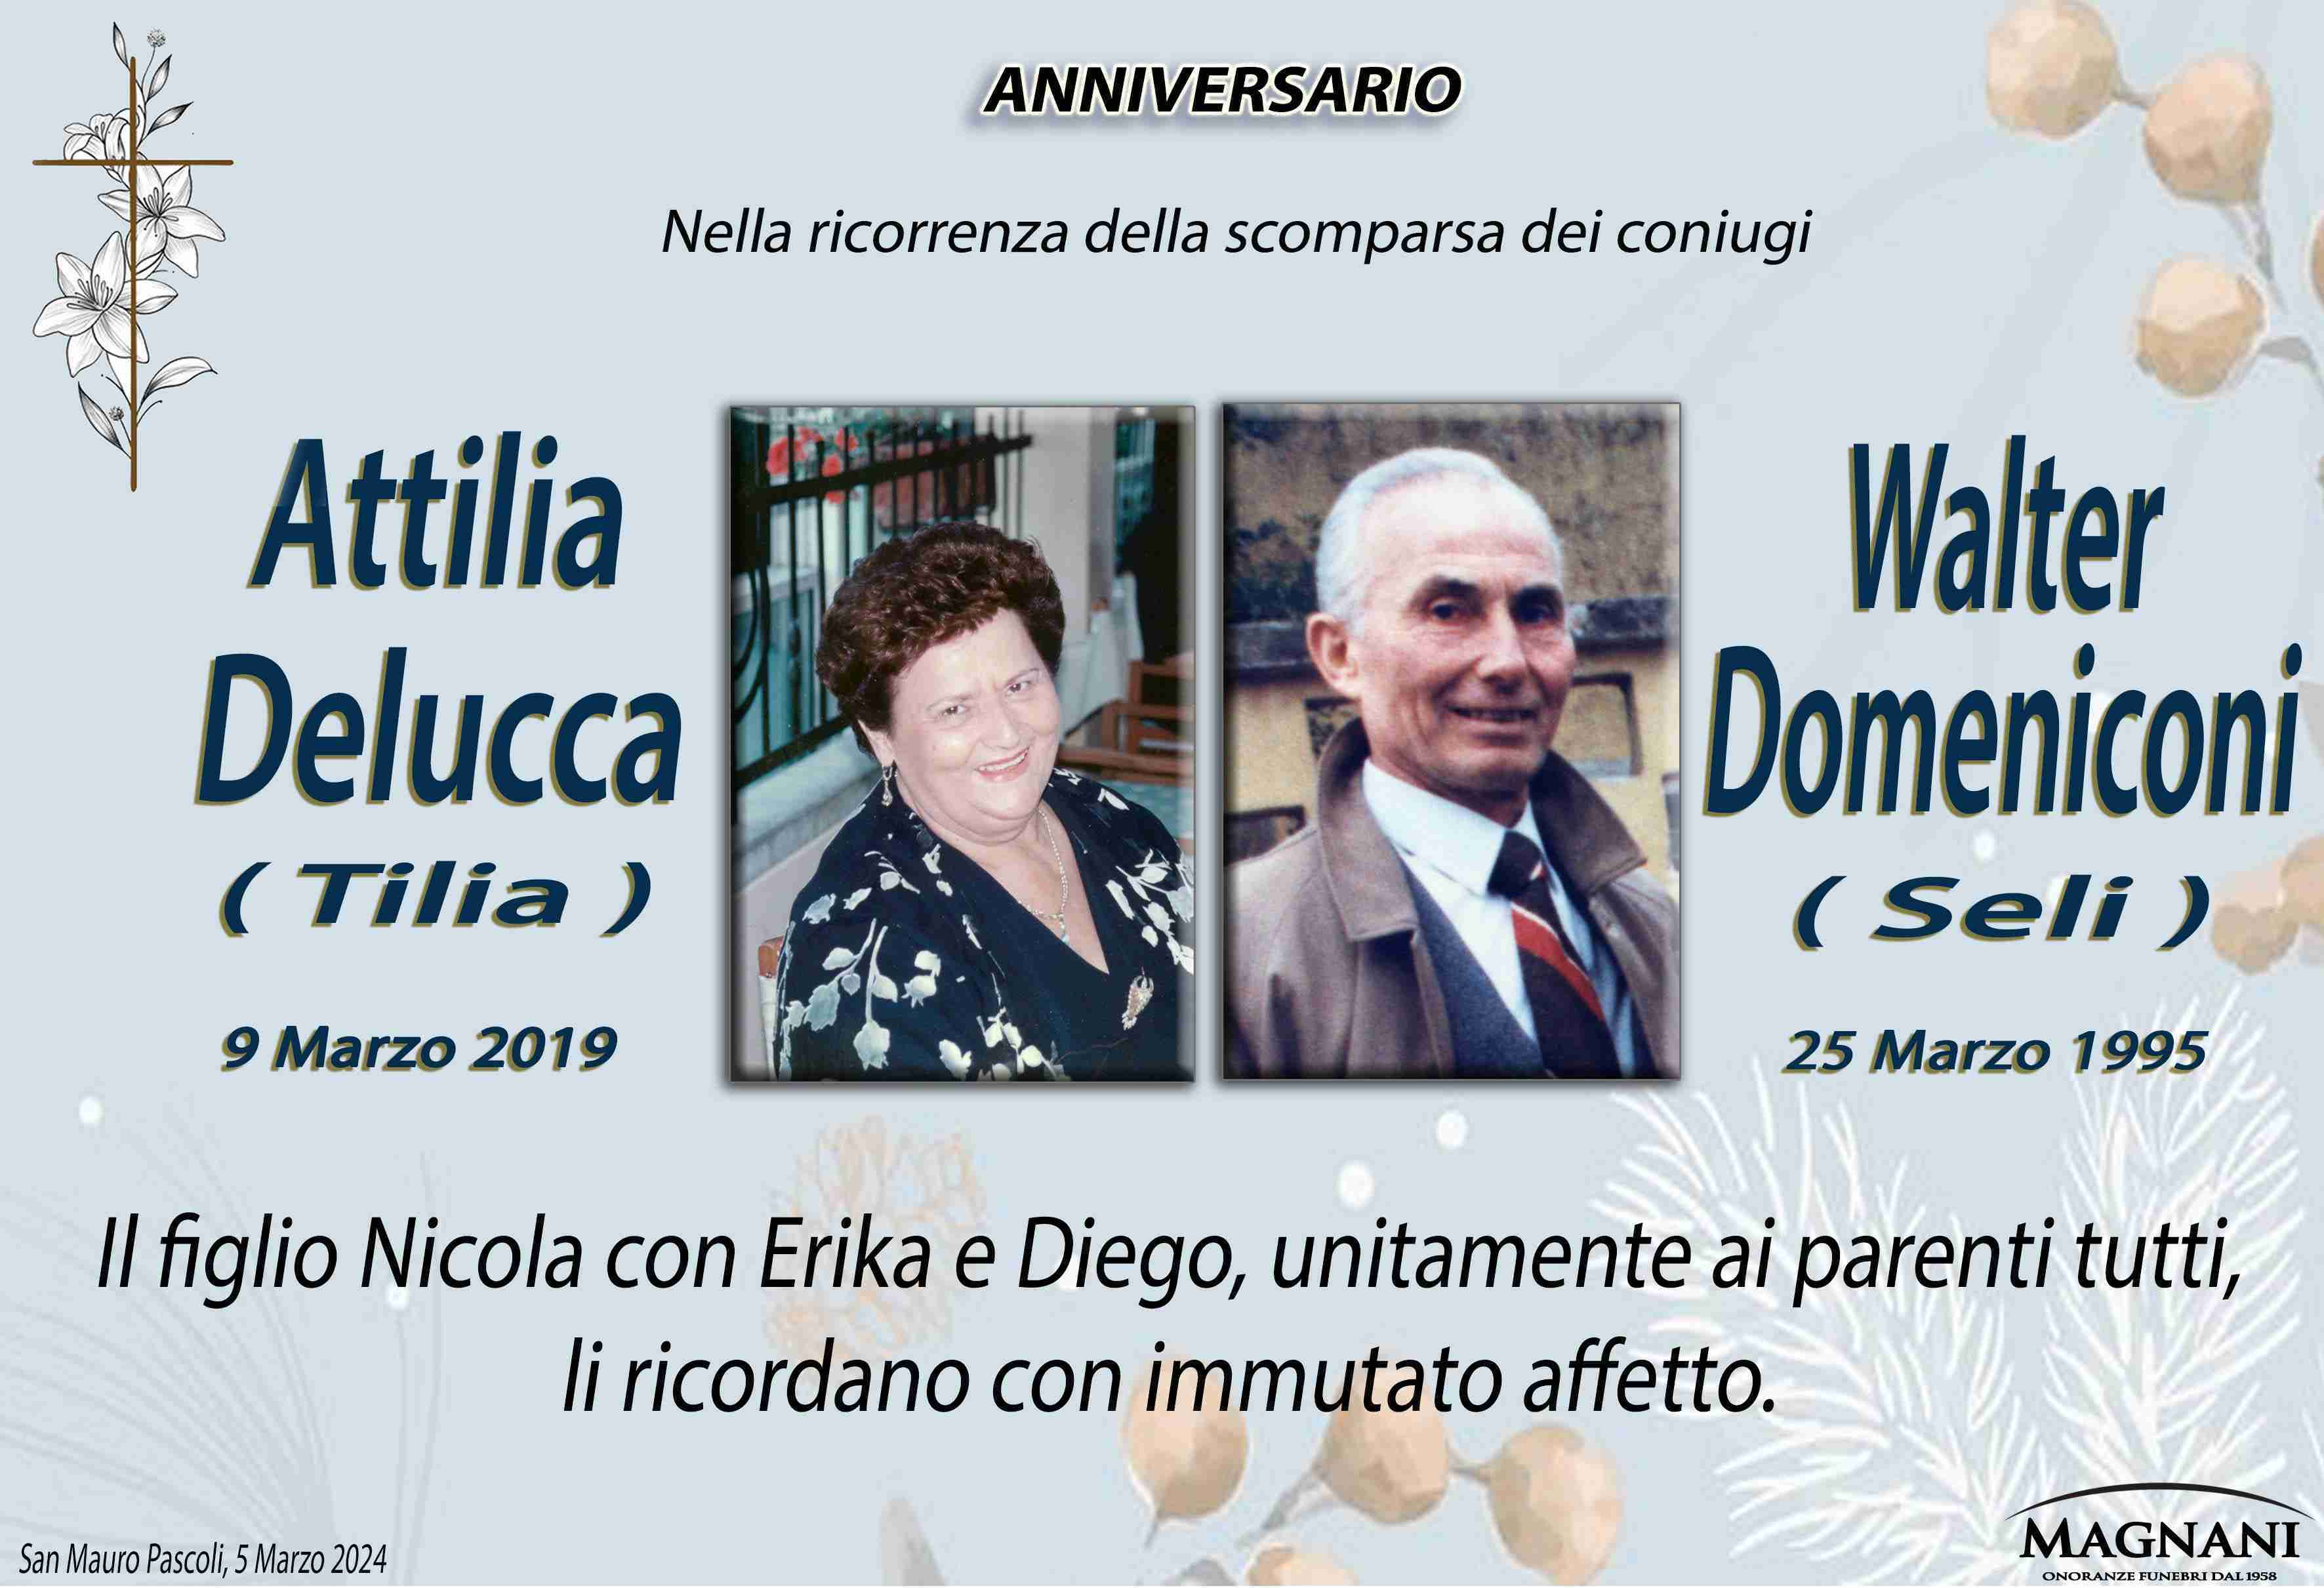 Attilia Delucca e Walter Domeniconi